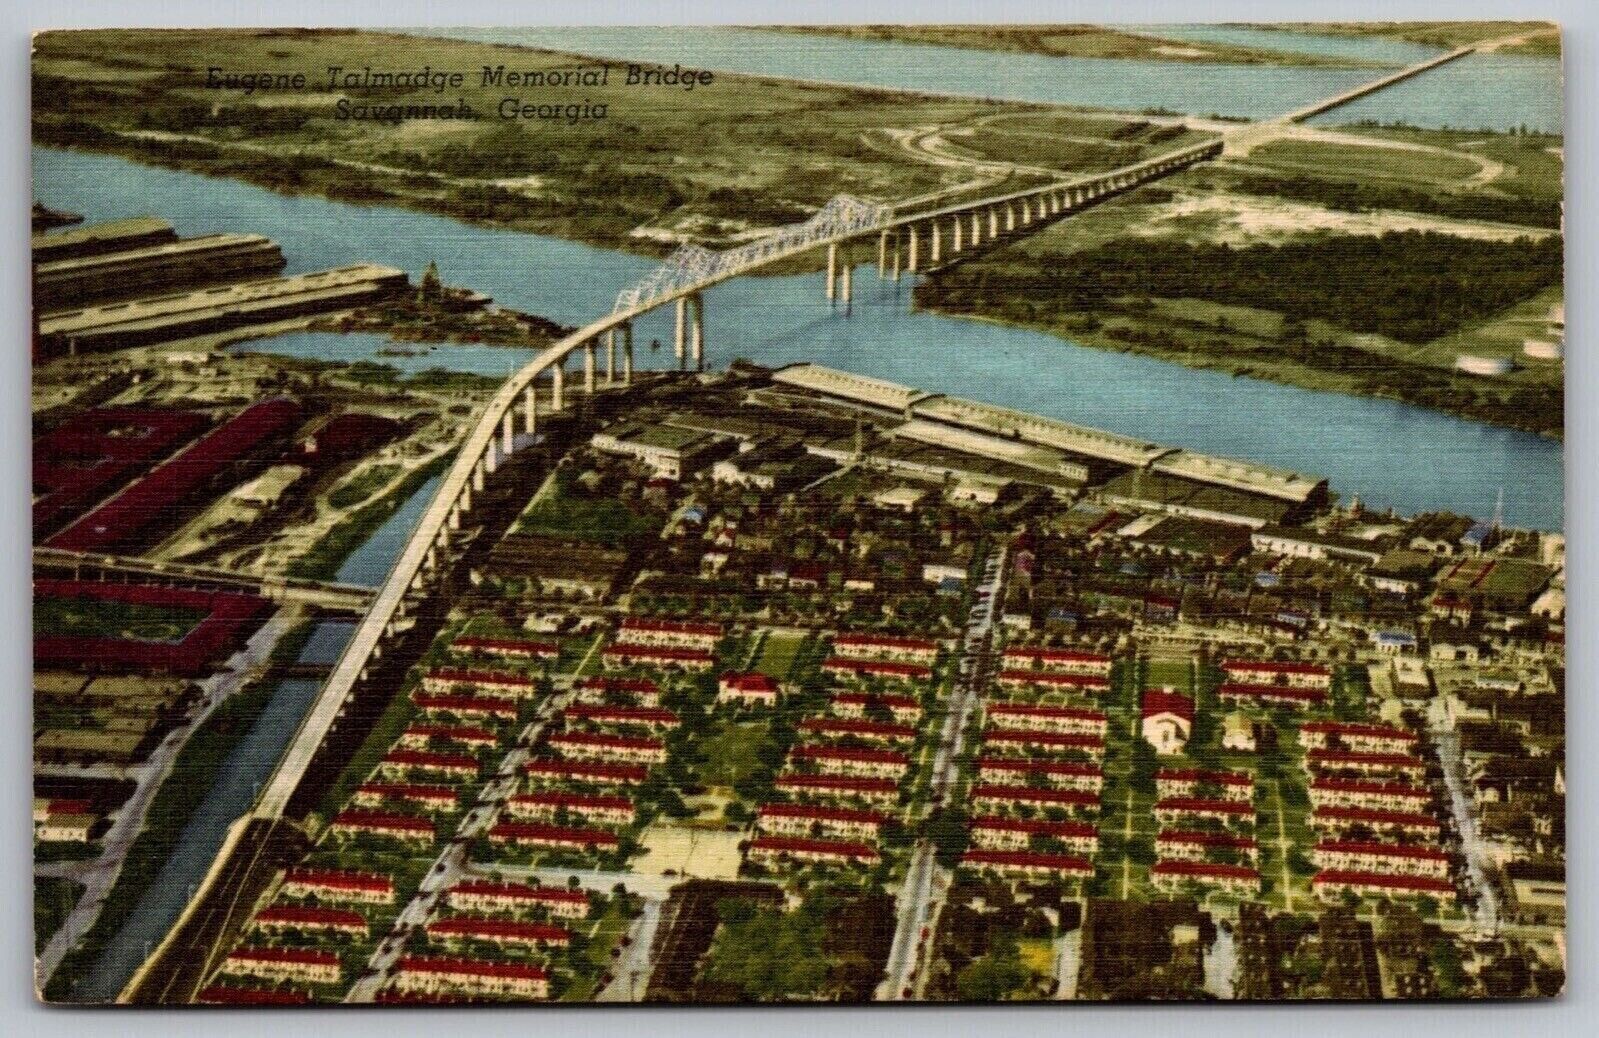 Eugene Talmadge Memorial Bridge Savannah Georiga Aerial View Waterway Postcard